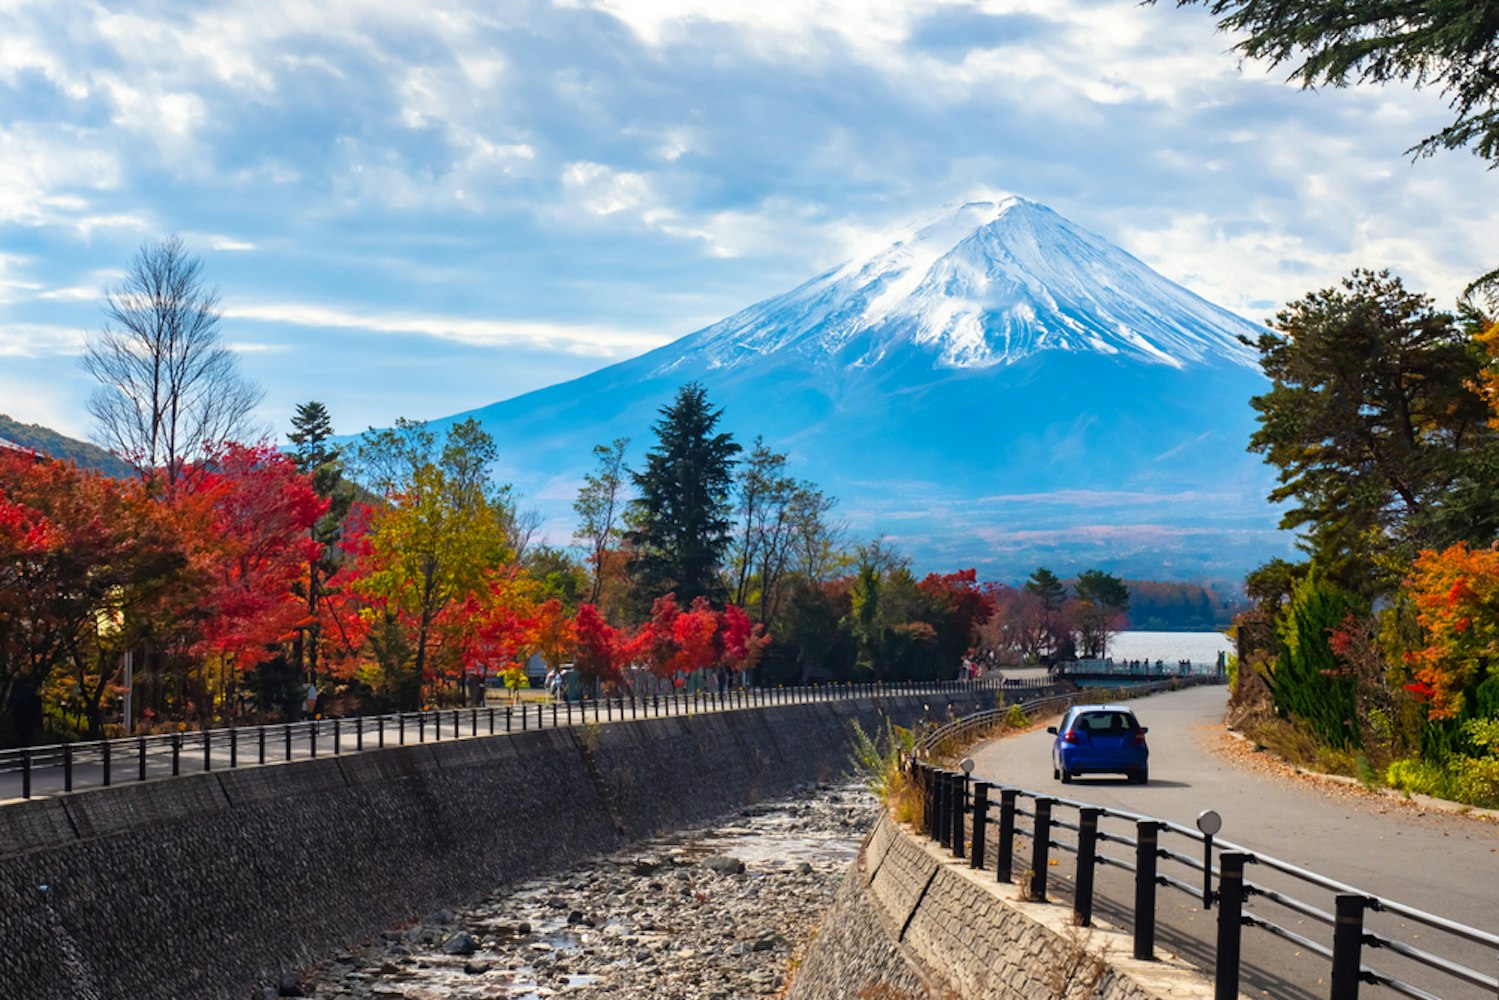 View of Fuji